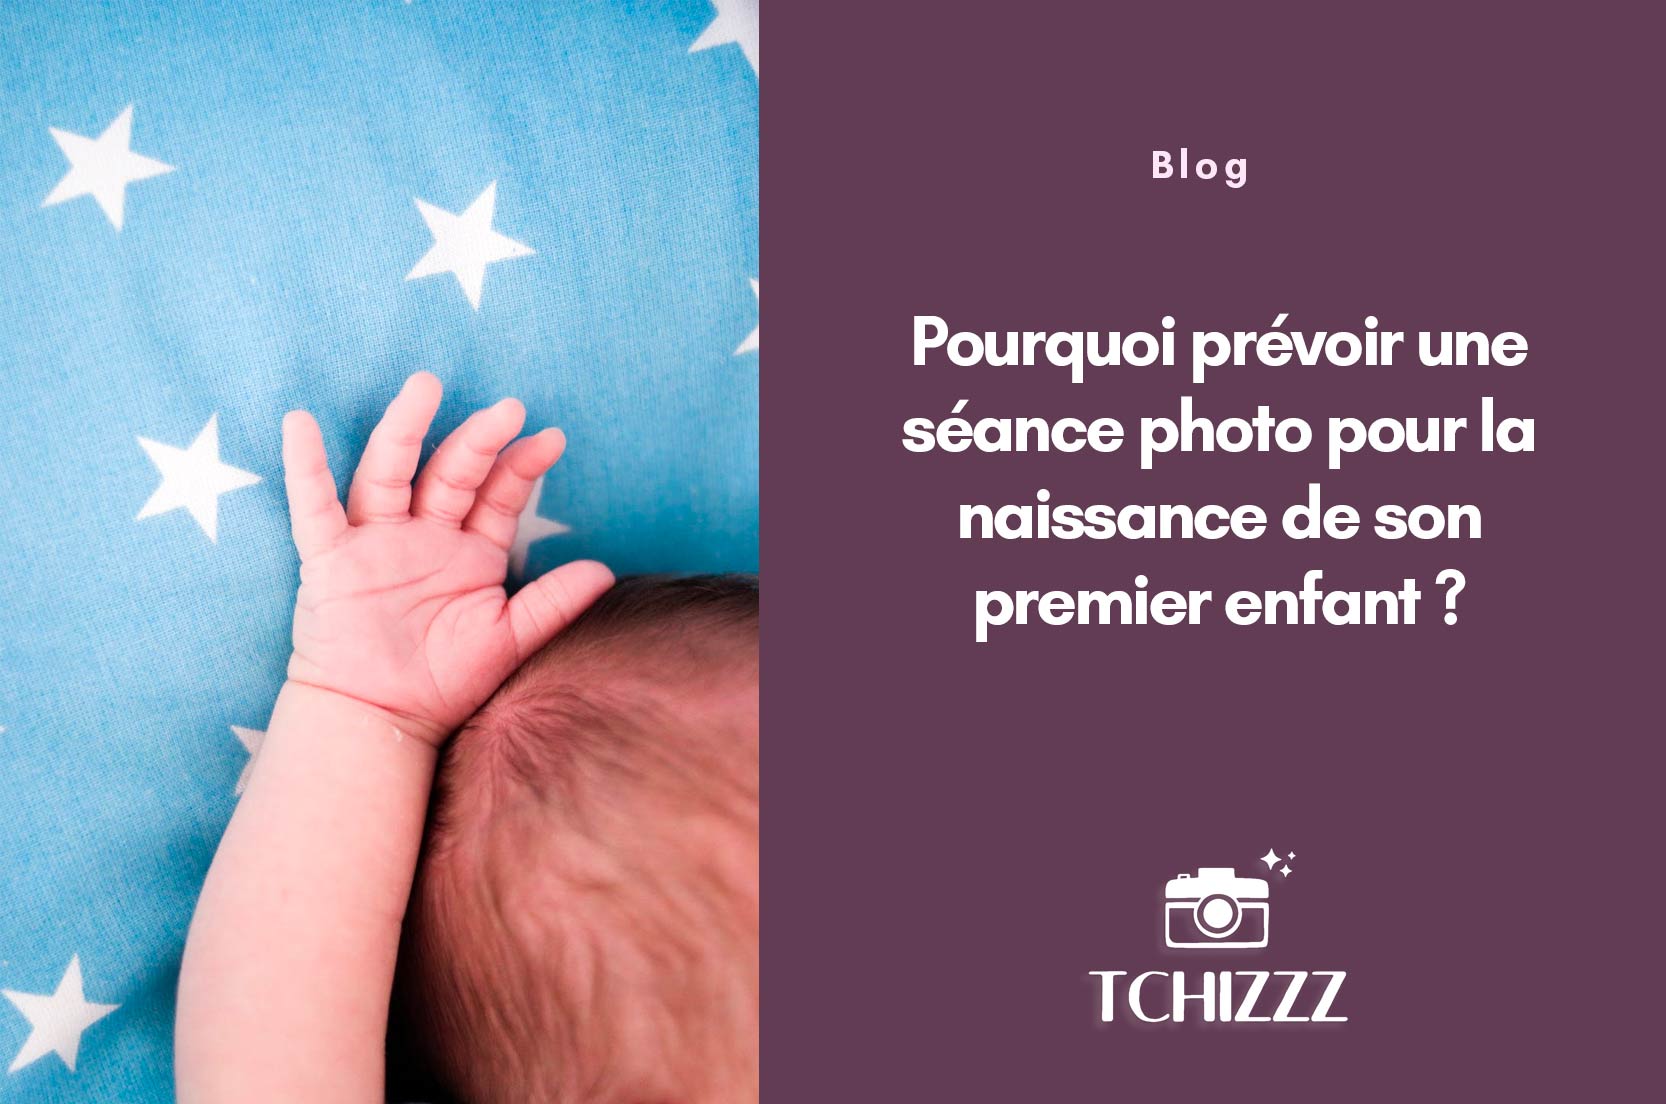 You are currently viewing Pourquoi prévoir une séance photo pour la naissance de son premier enfant ?